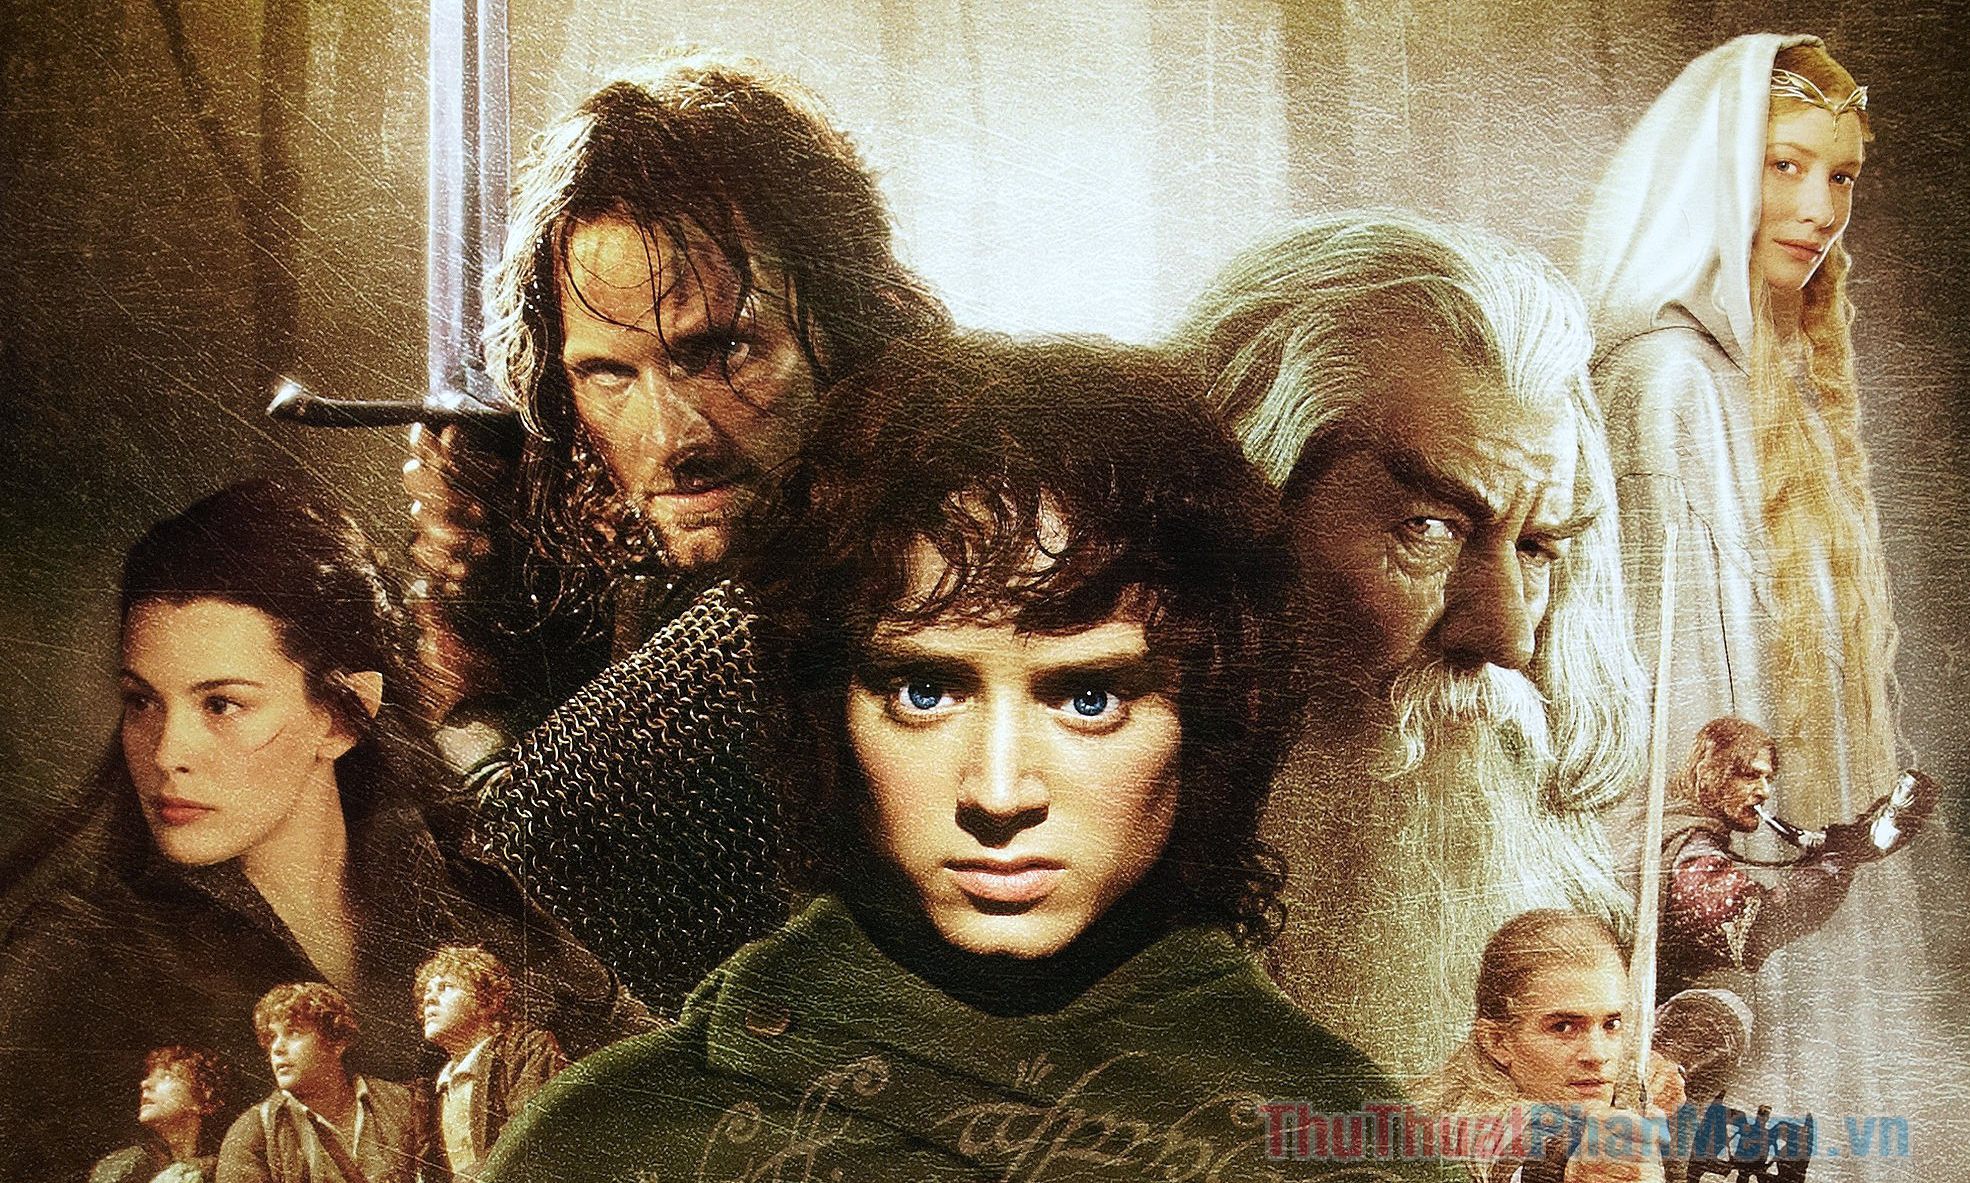 The Lord of the Rings & The Hobbit (từ 2001) – Chúa Tể Những Chiếc Nhẫn & Người Hobbit